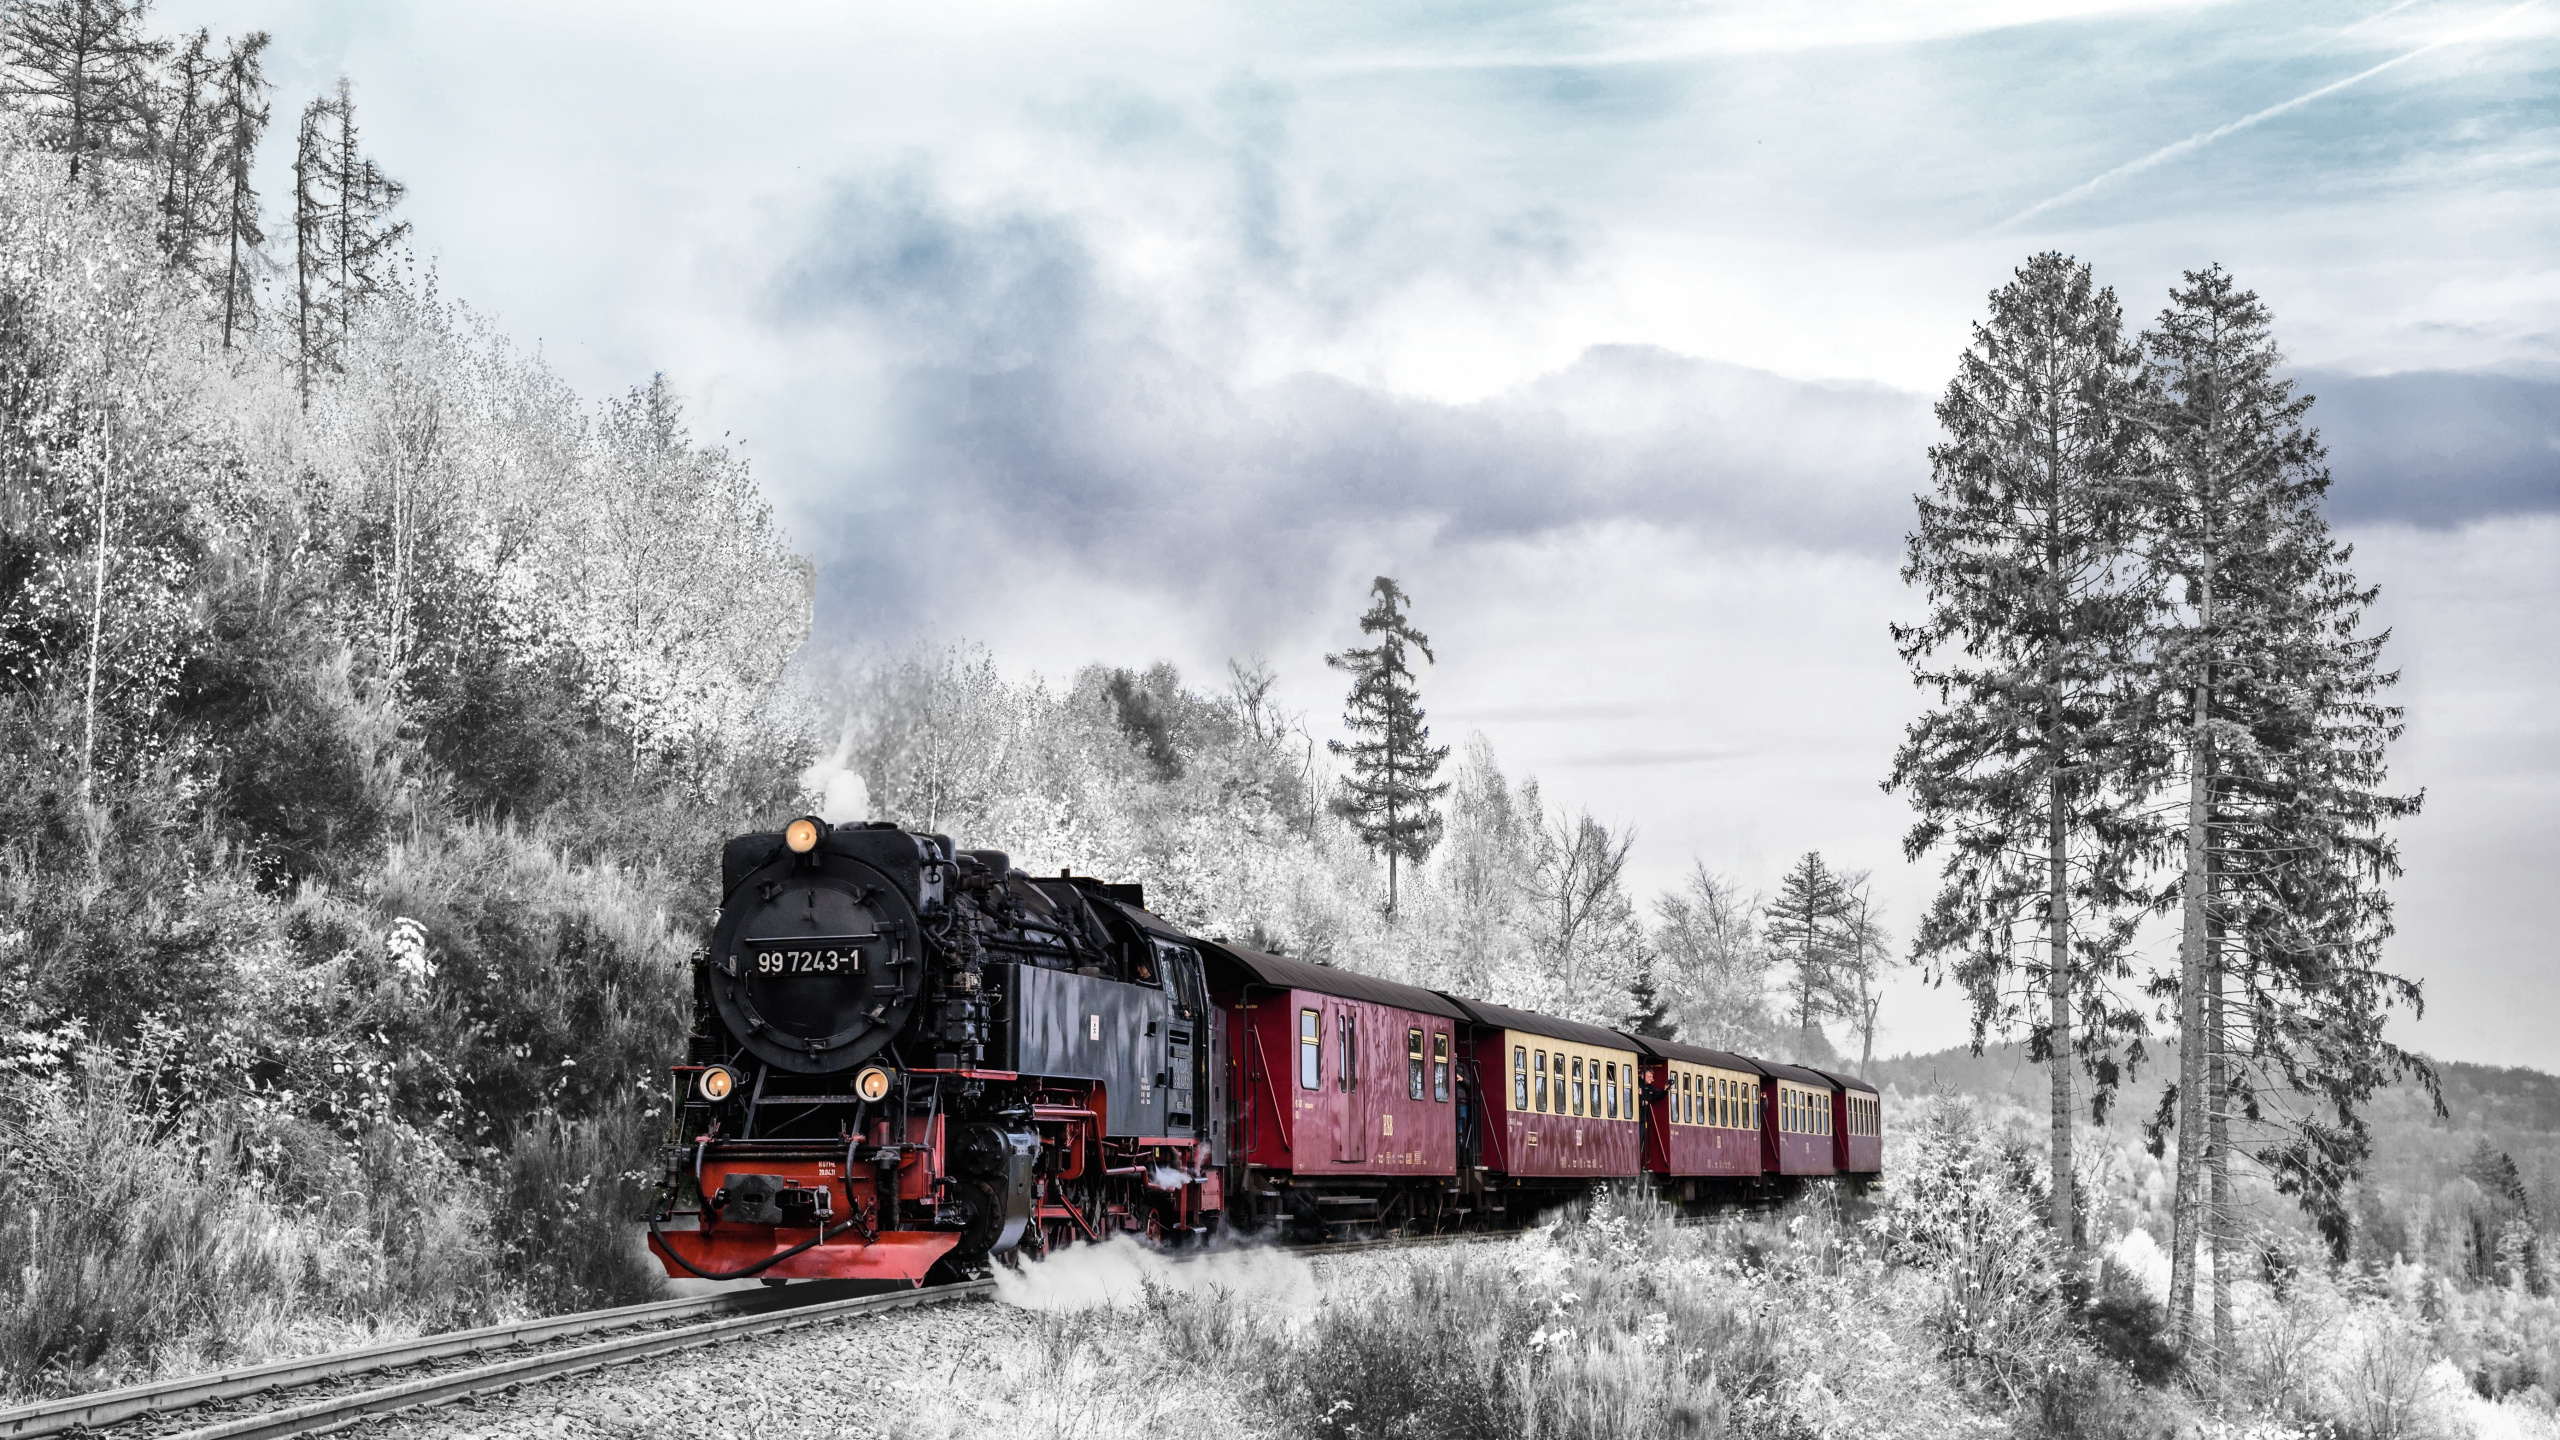 火车, 铁路运输, 蒸汽机车, 冬天, 是火车站 壁纸 2560x1440 允许